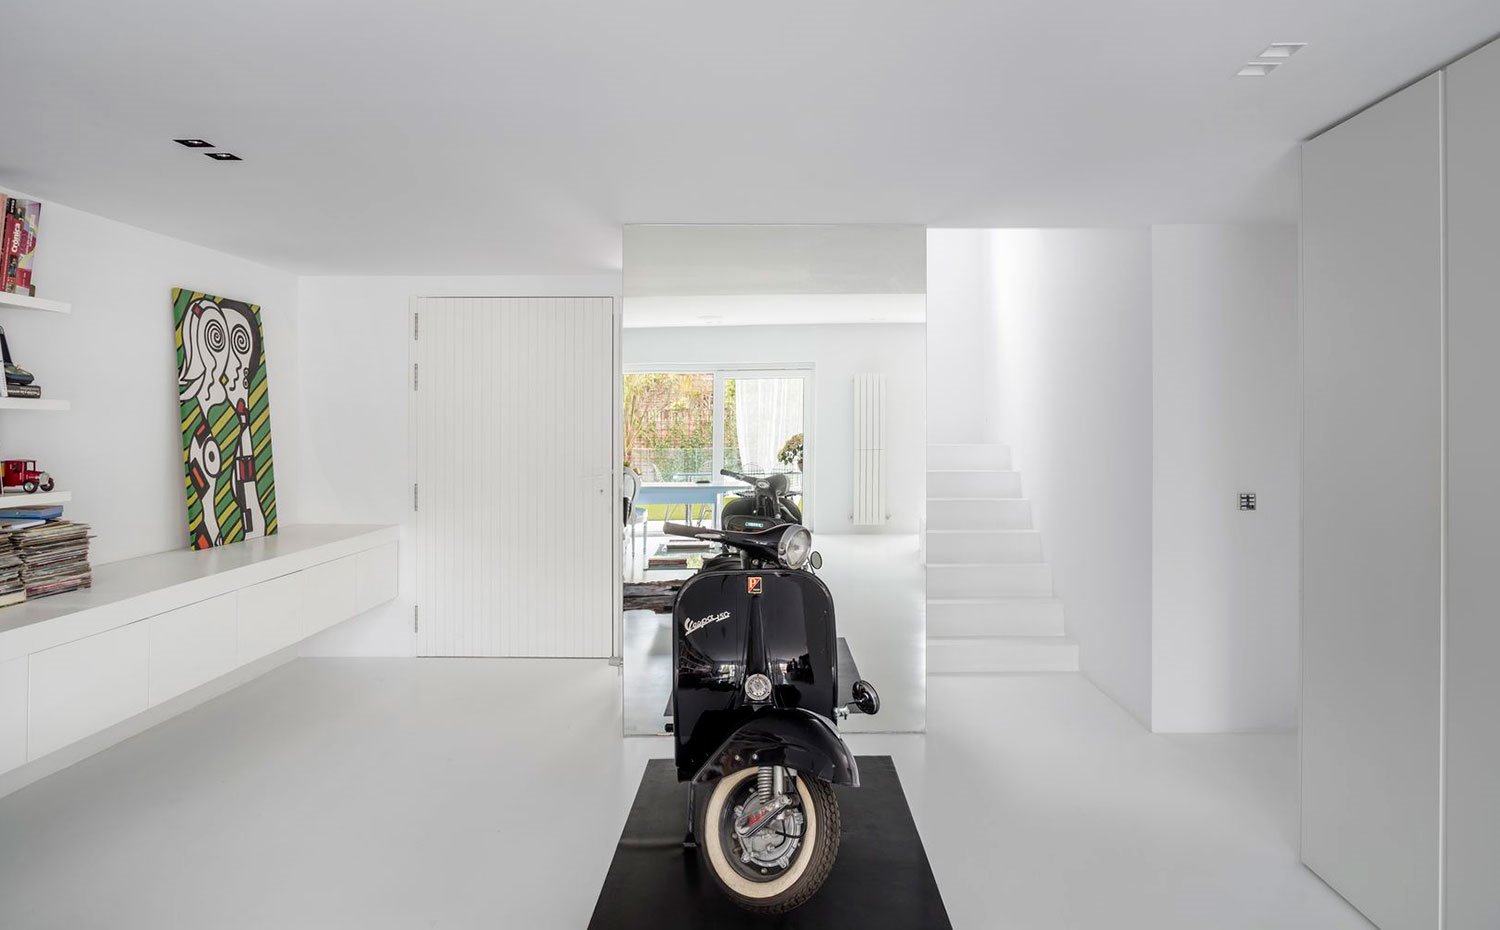 Zona-de-acceso-con-moto-negra,-mueble-bajo-suspendido-en-blanco-en-todo-ancho-de-pared,-escaleras-a-piso-superior